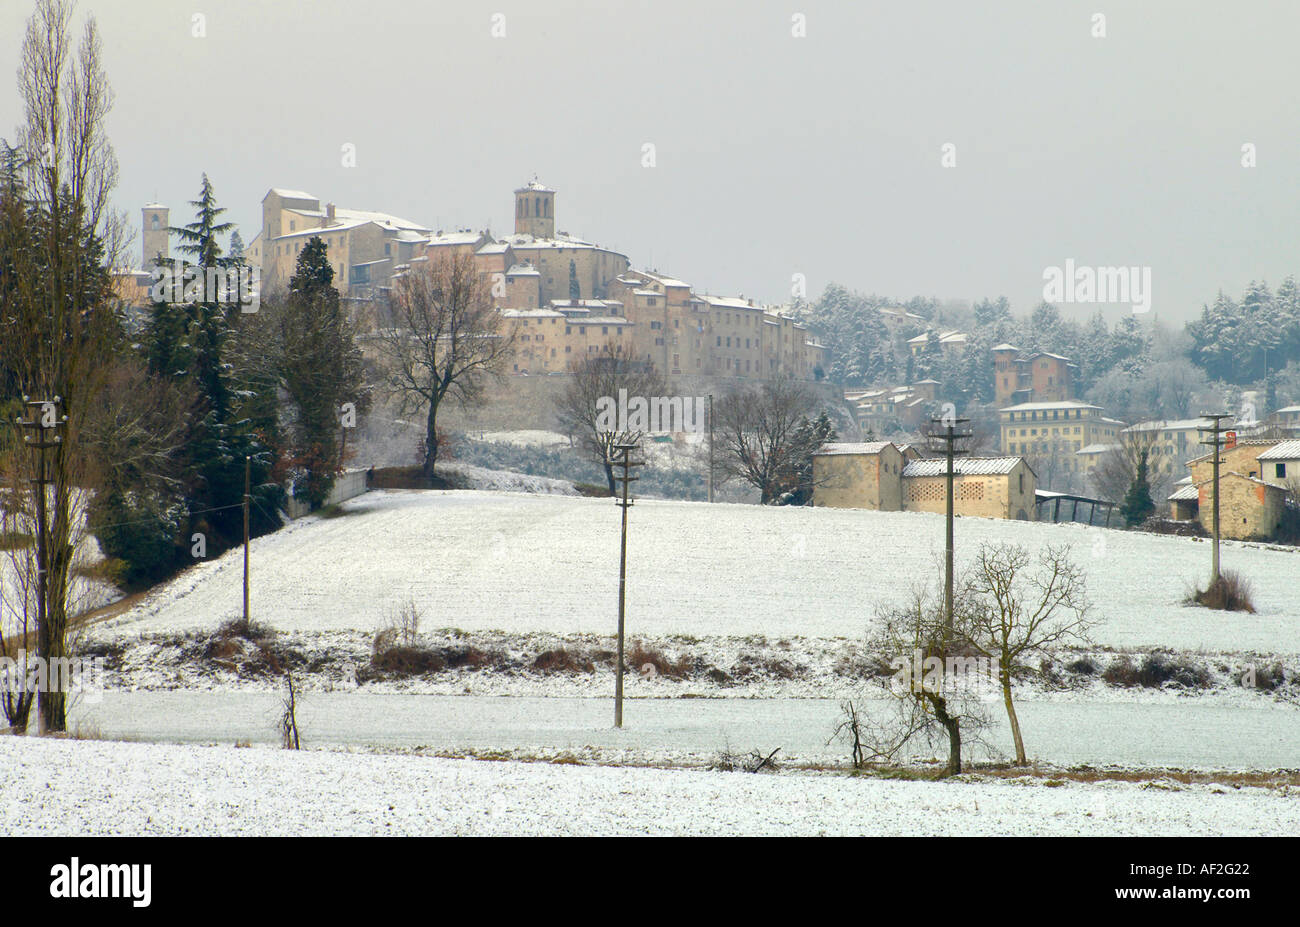 Ciudad Meidieval de Anghiari cubiertas de nieve Foto de stock